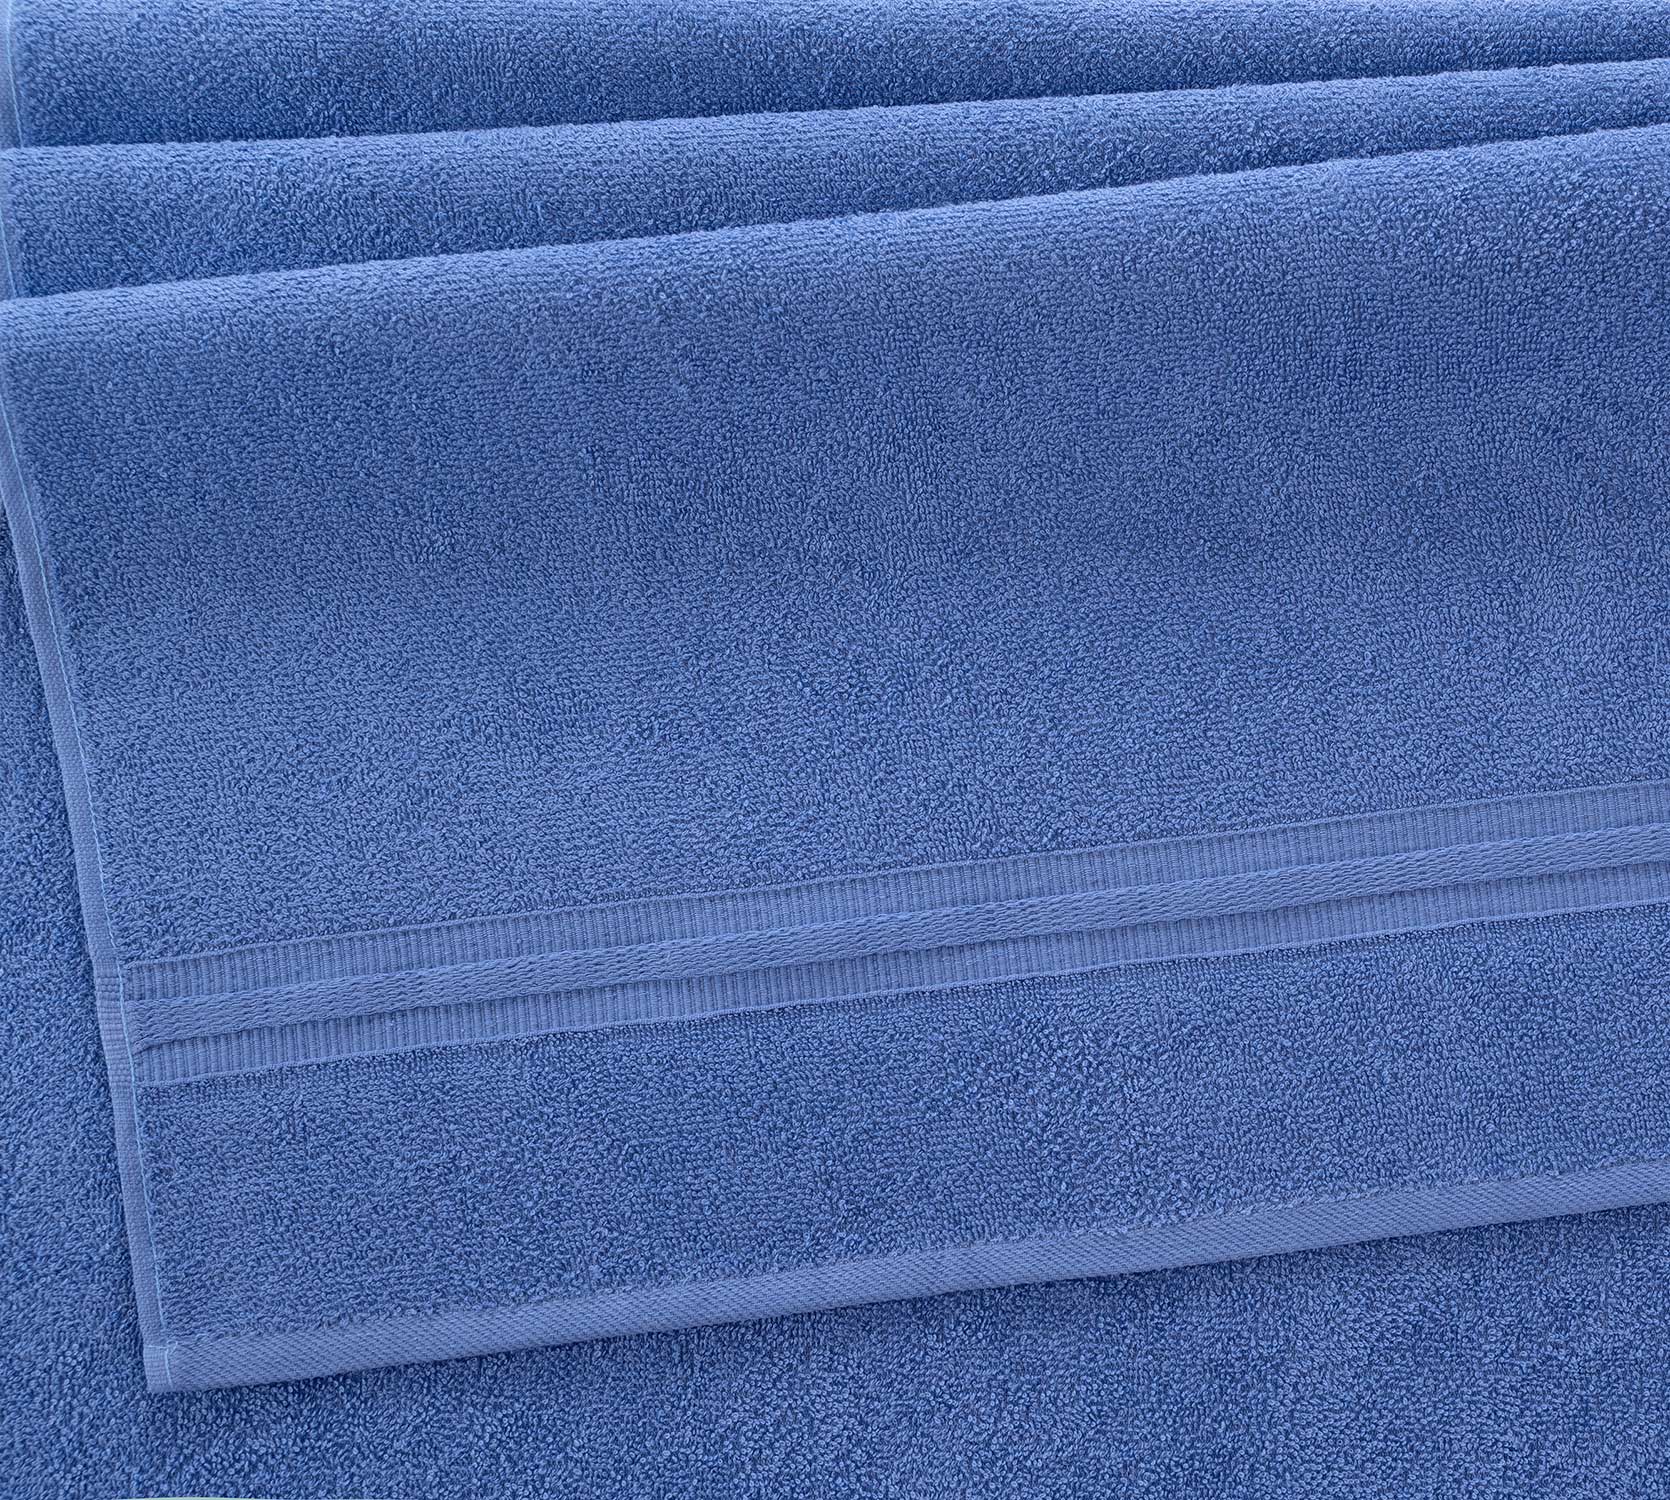 Постельное белье Полотенце махровое банное 70x130, Каскад синий фото